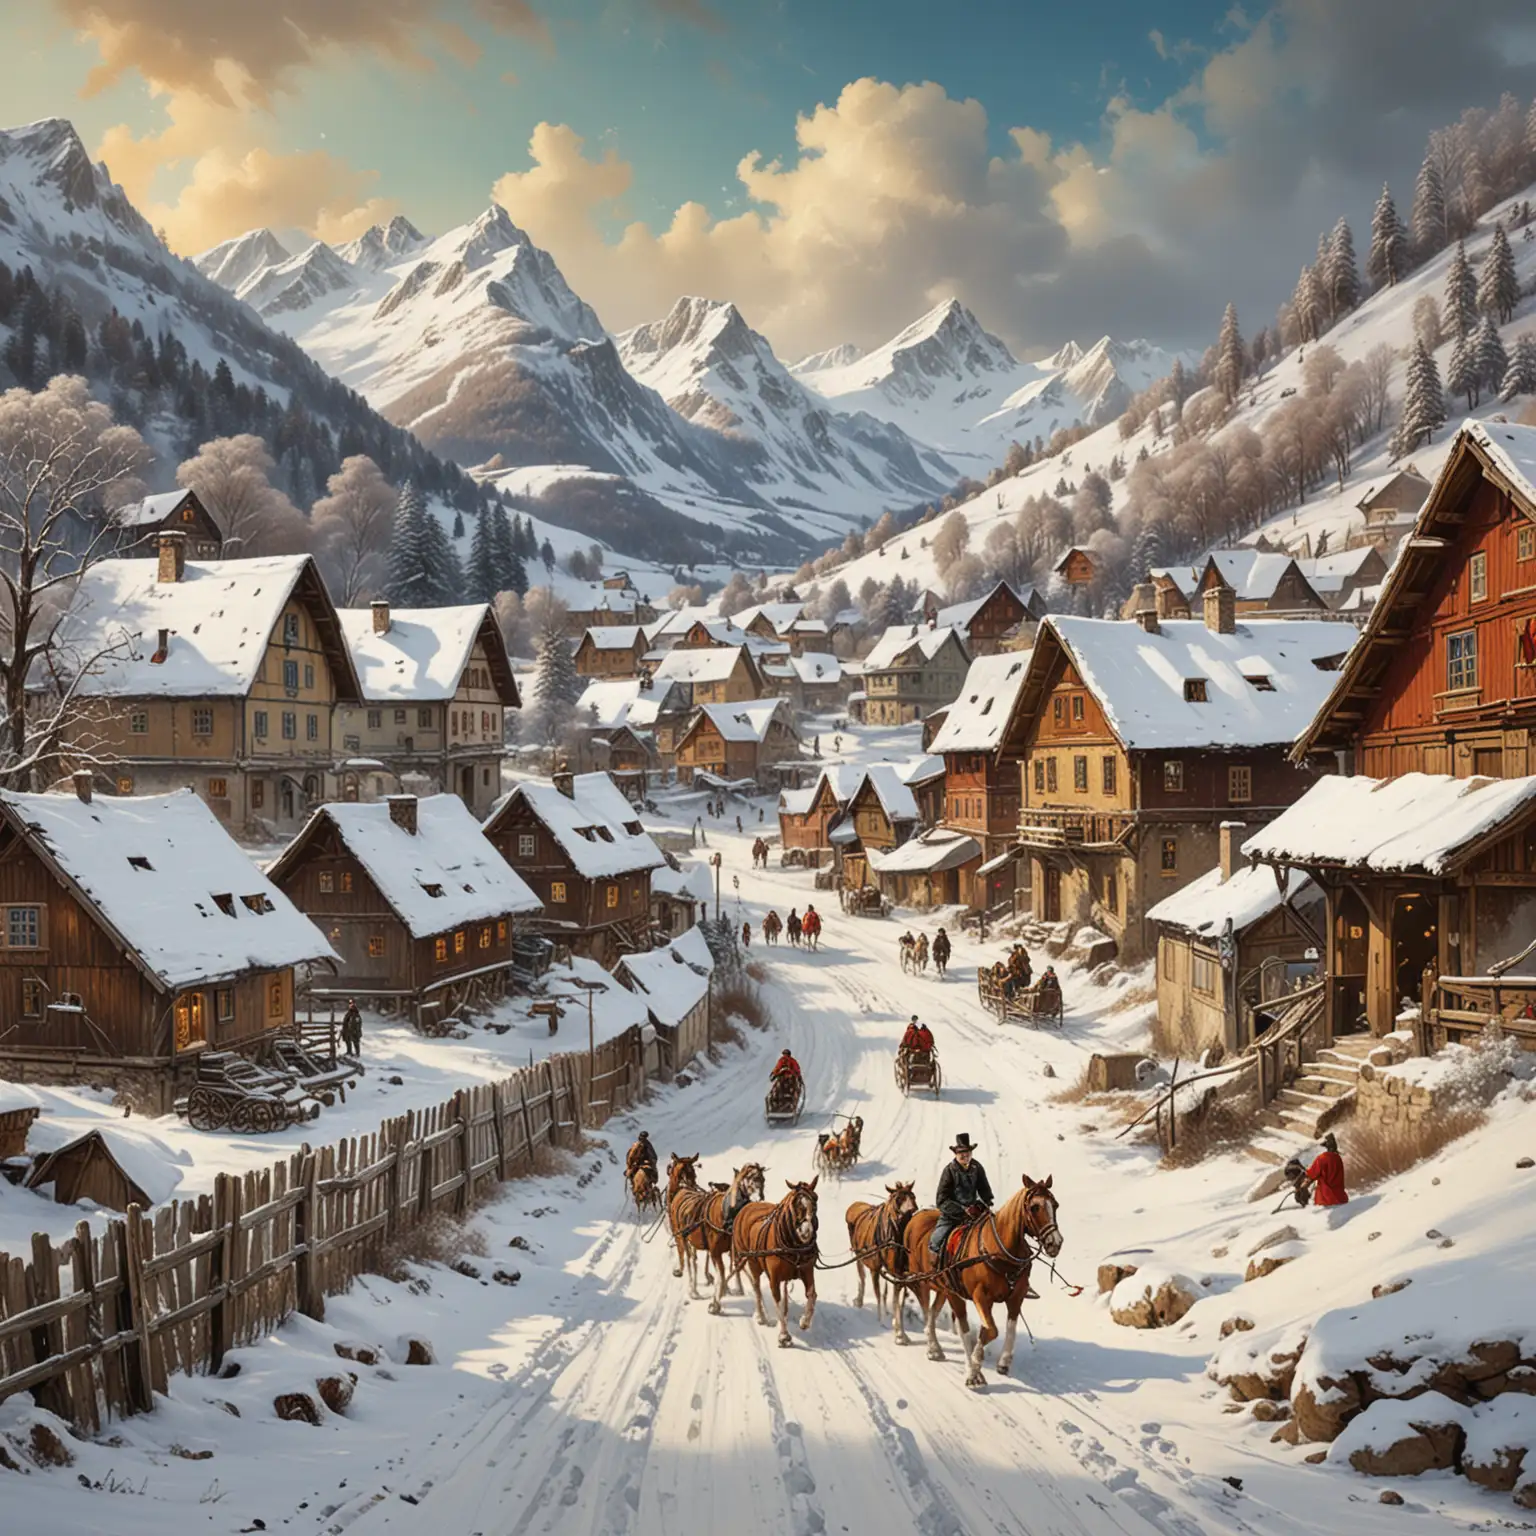 En snöig by i österrikiska alperna, 1800-tal, hästar drar slädar, en skidåkare åker störtlopp, en Sankt bernhardshund, Alice i underlandet stil, magiskt, fantasyroman, modern konst, Jackson Pollock stil 
